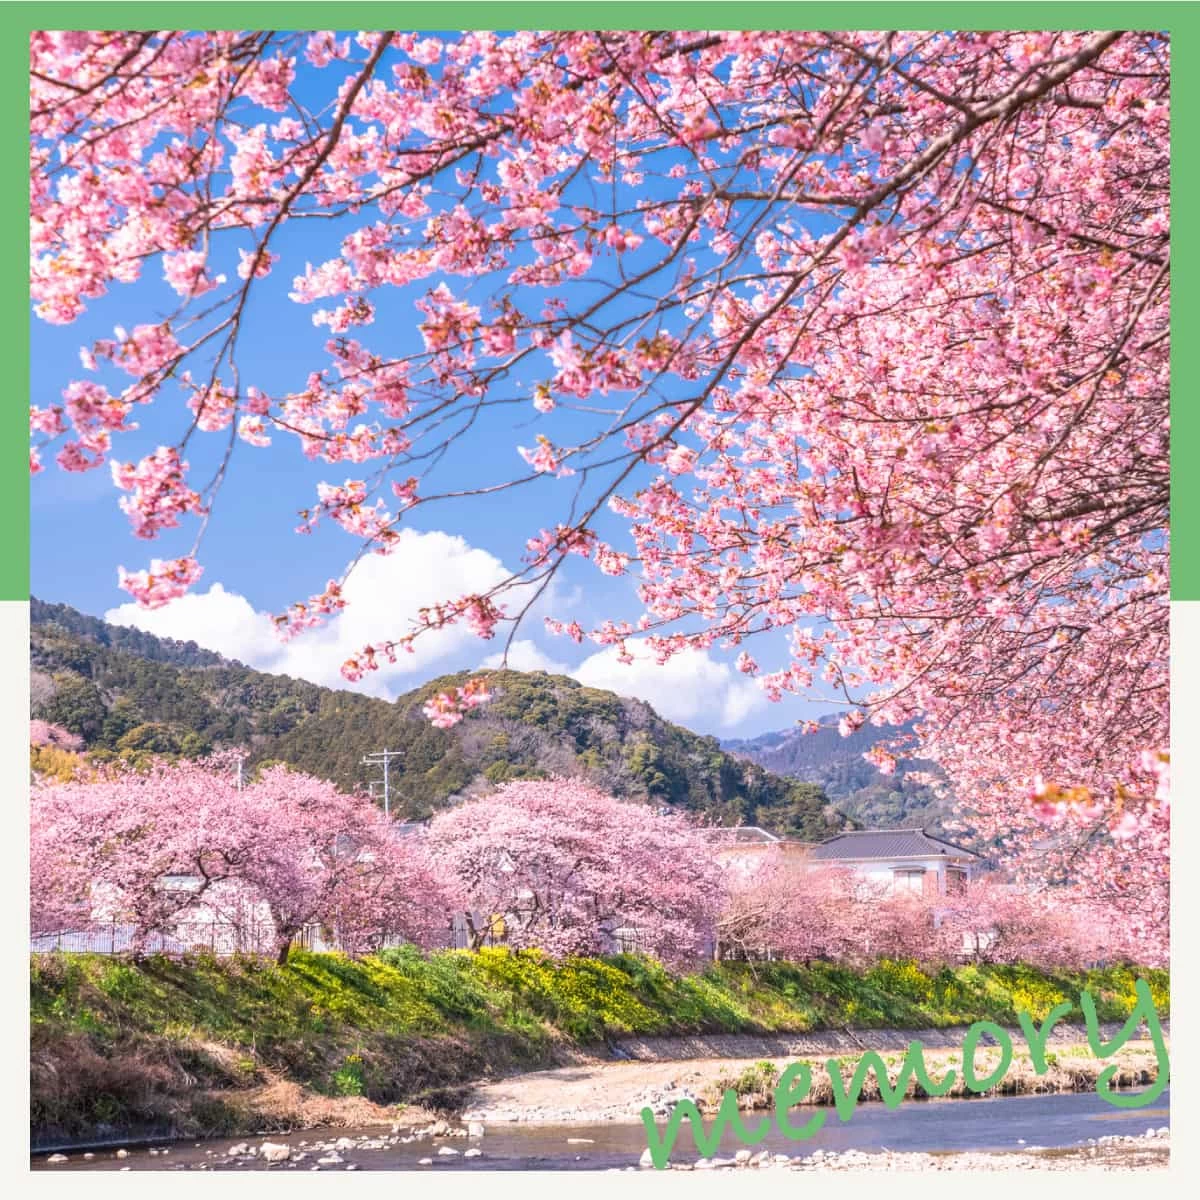 日帰りで静岡の河津桜まつりへ！夜桜も観賞する伊豆デート旅